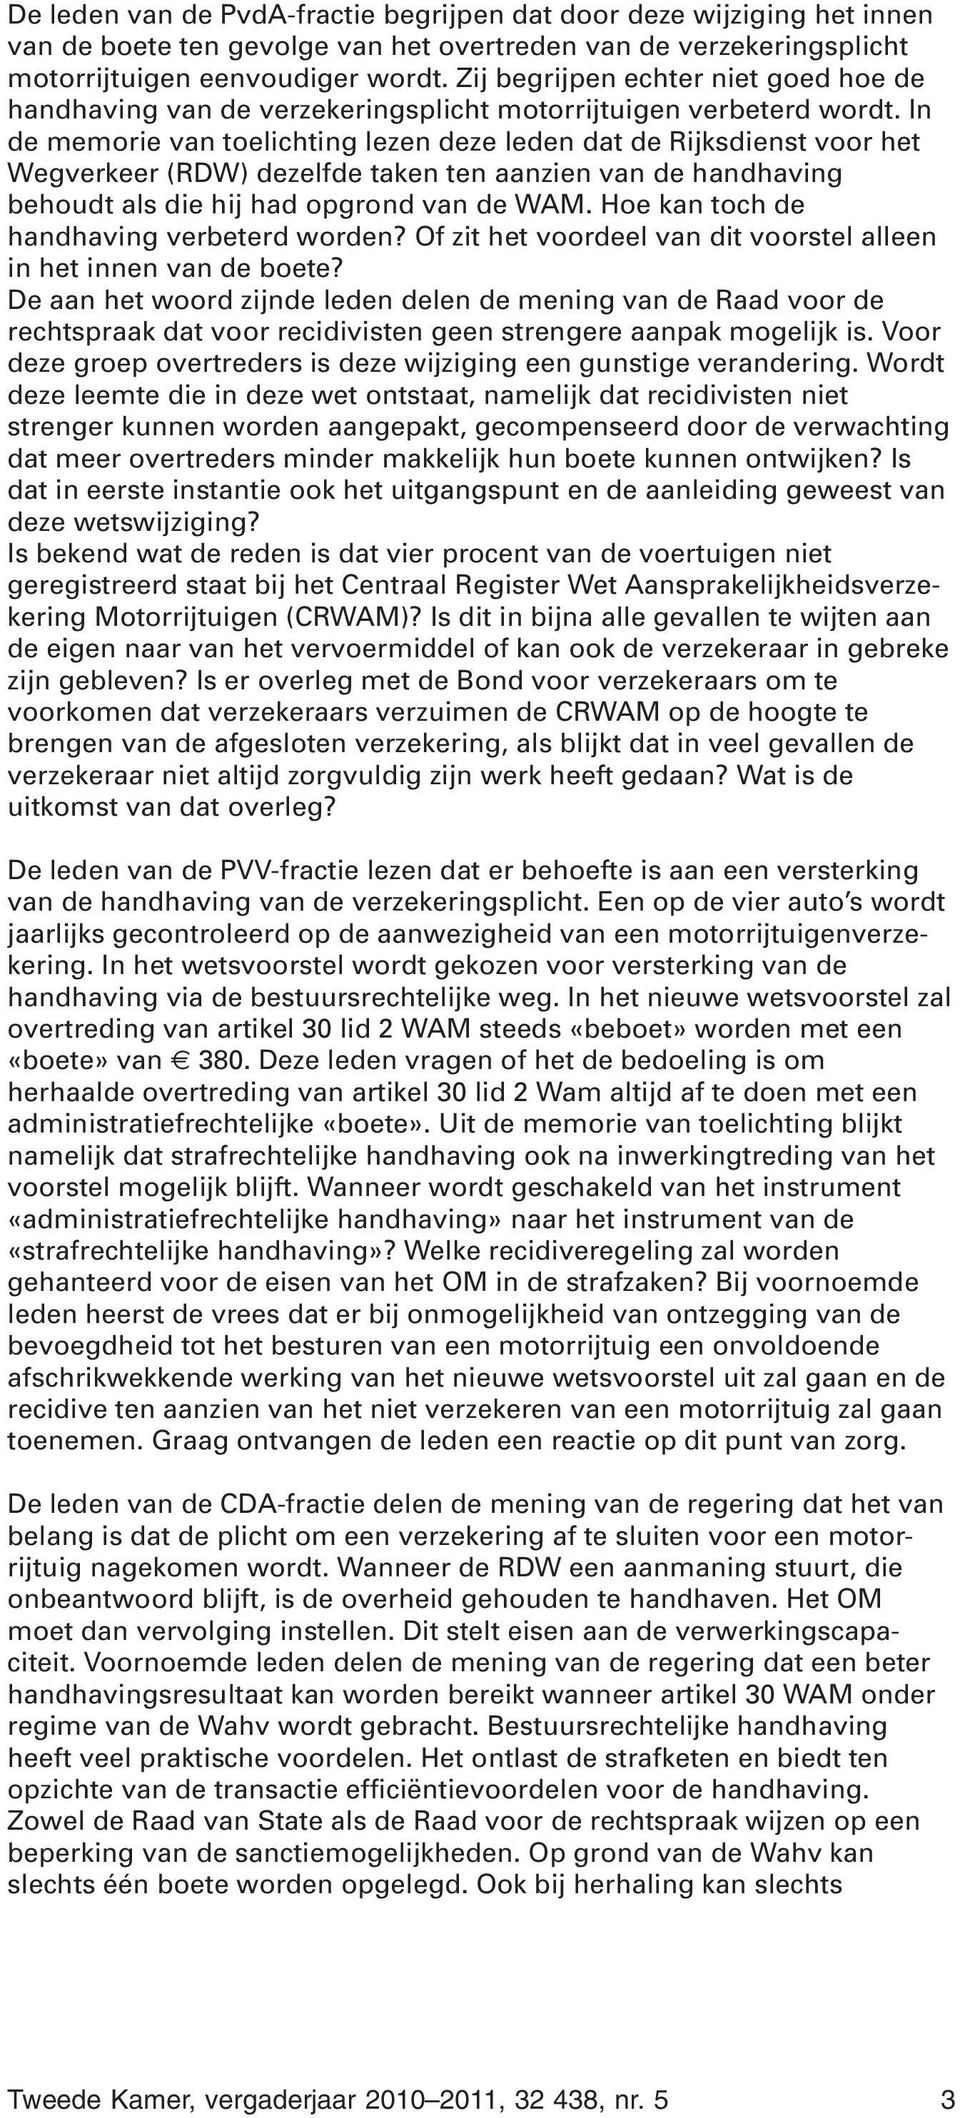 In de memorie van toelichting lezen deze leden dat de Rijksdienst voor het Wegverkeer (RDW) dezelfde taken ten aanzien van de handhaving behoudt als die hij had opgrond van de WAM.